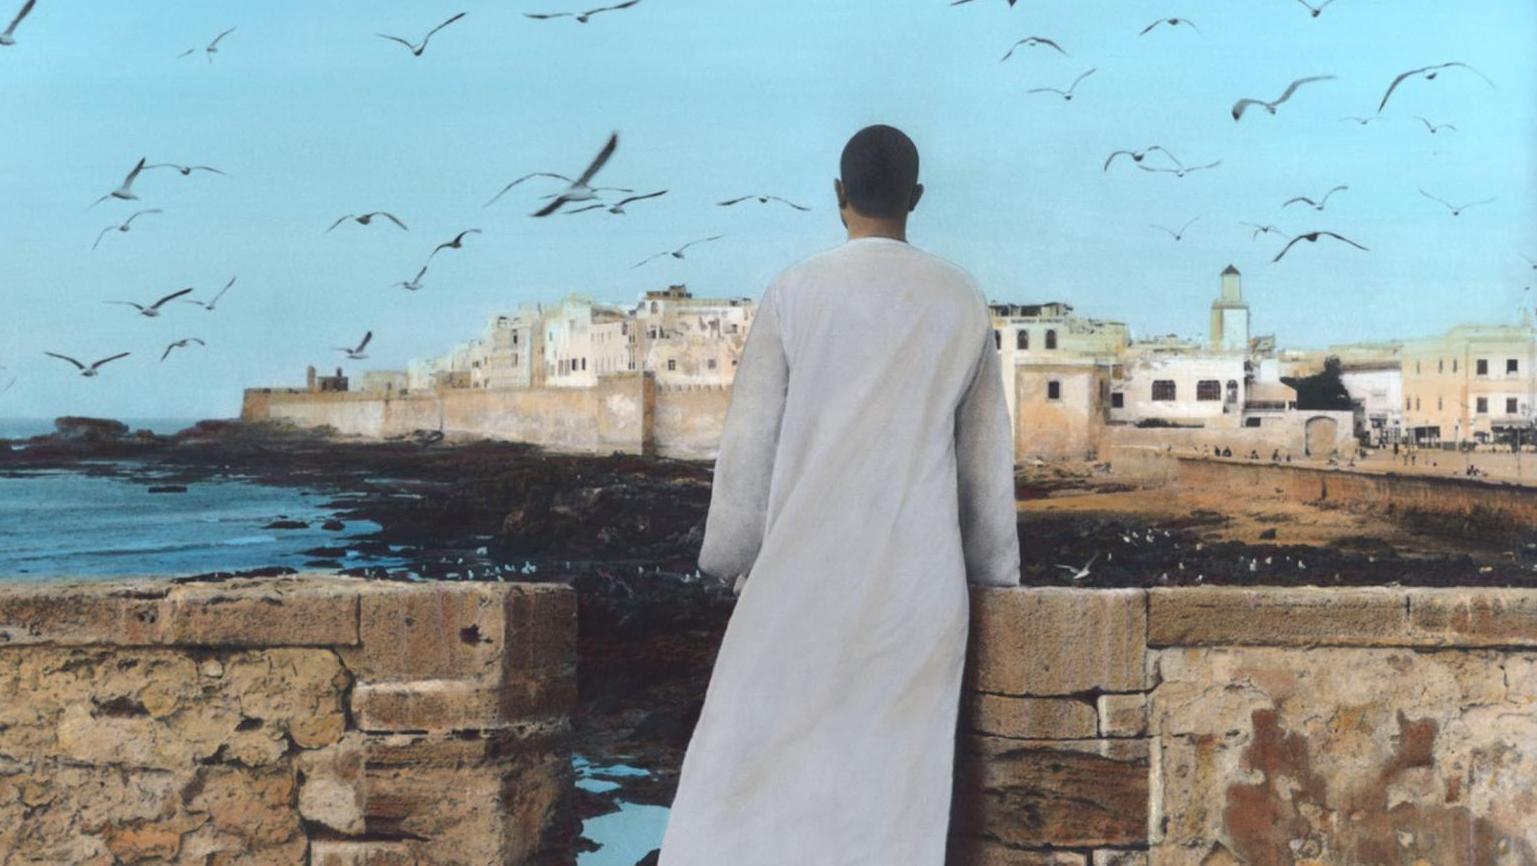 Youssef Nabil (né en 1972), Autoportrait, Essaouira (2011), présenté par la galerie... Marrakech au premier plan